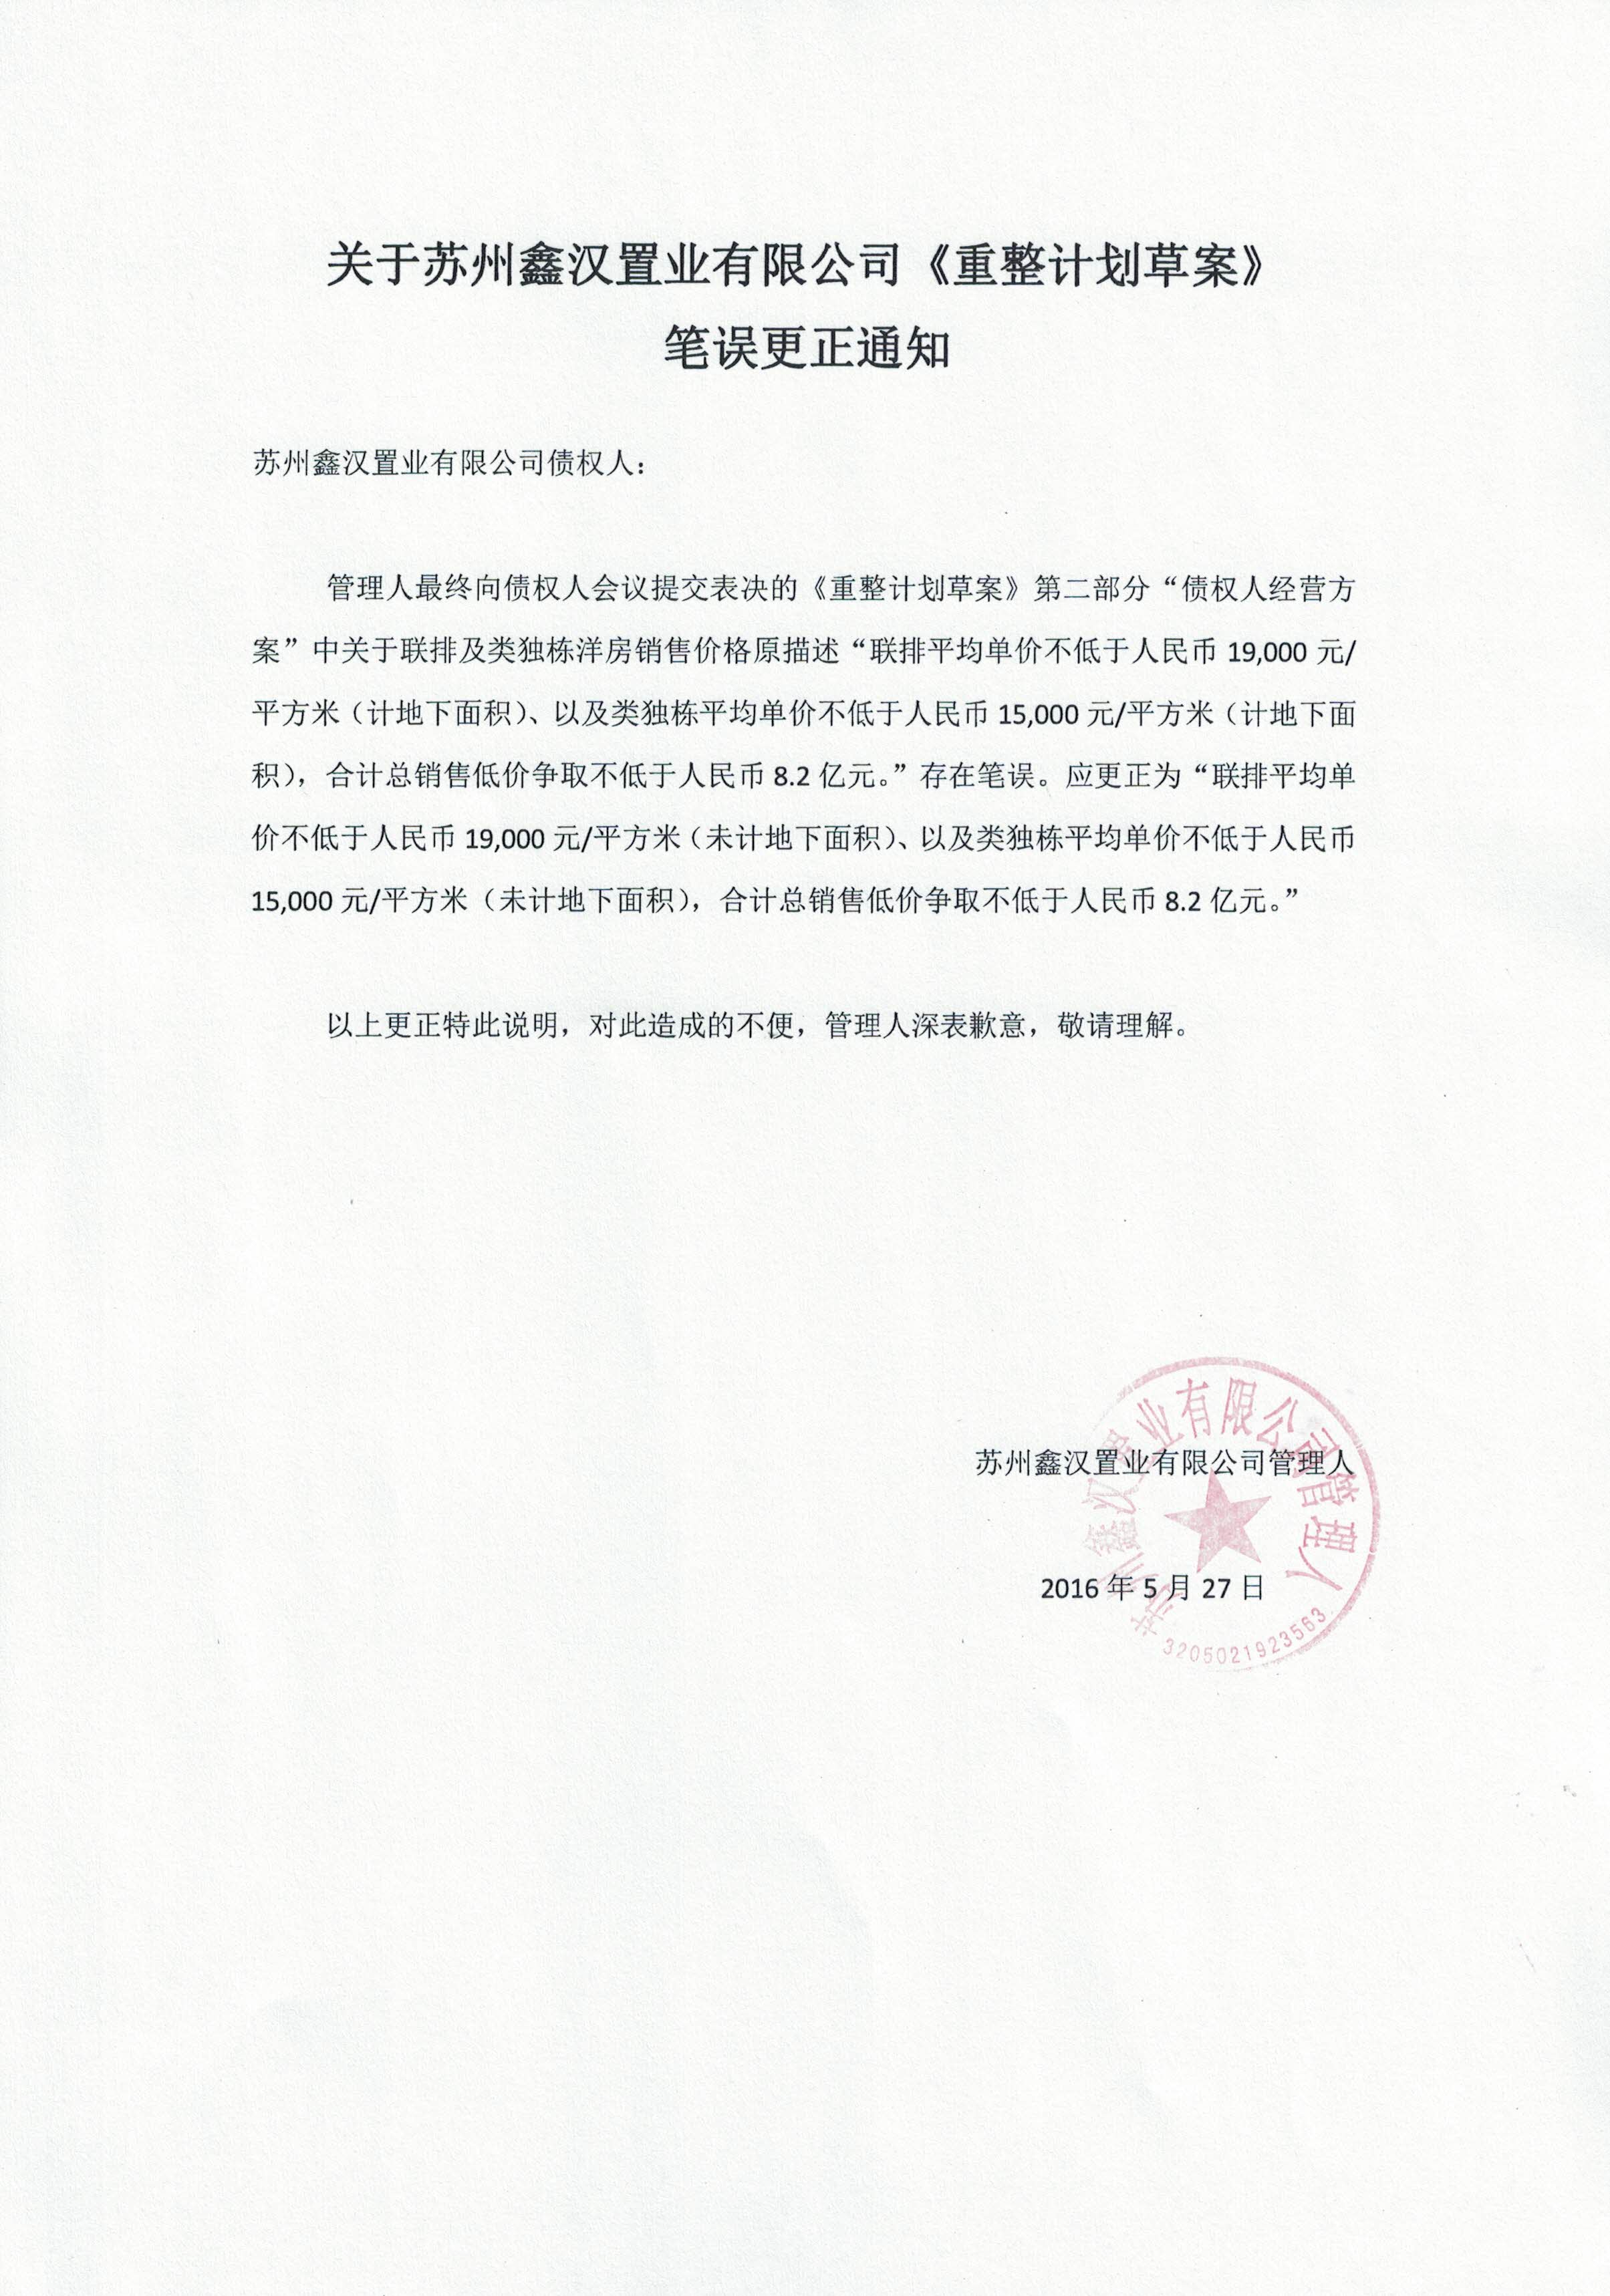 苏州鑫汉置业有限公司重整计划草案笔误更正说明